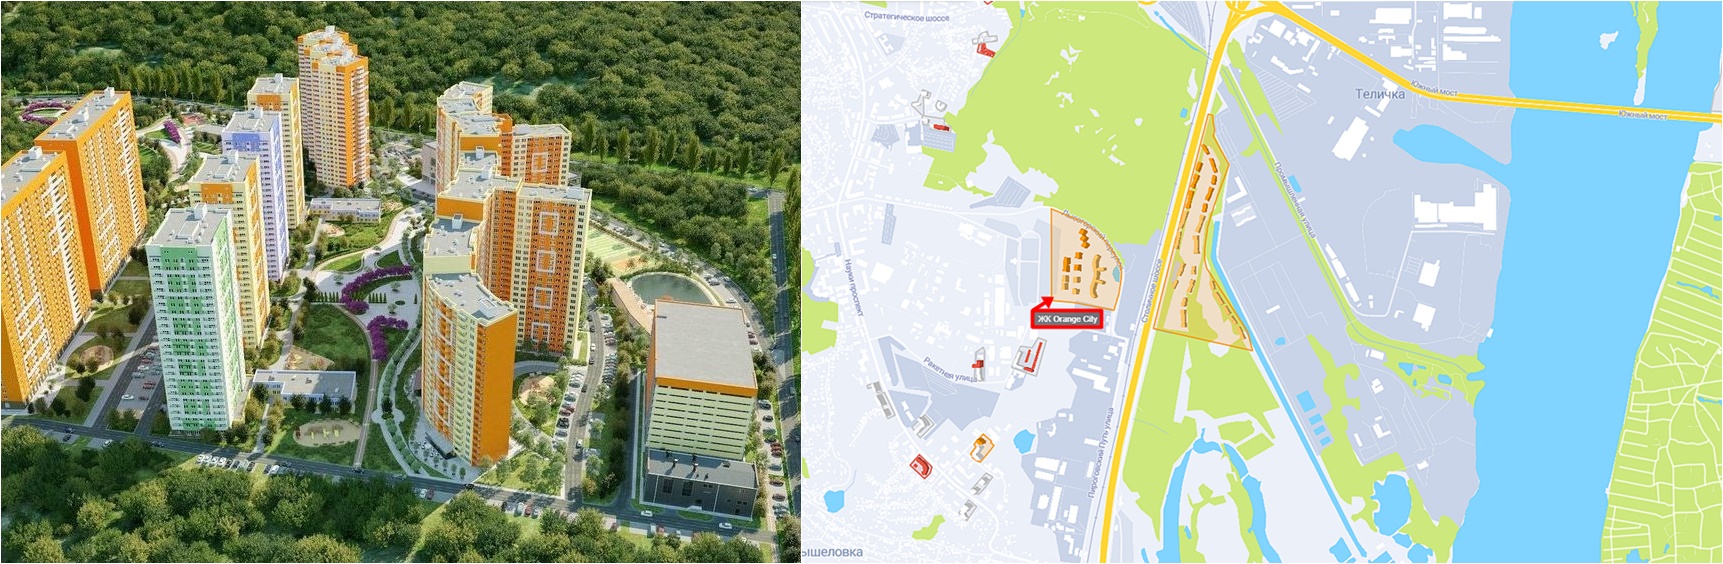 ЖК Оранж Сити визуализация и на карте